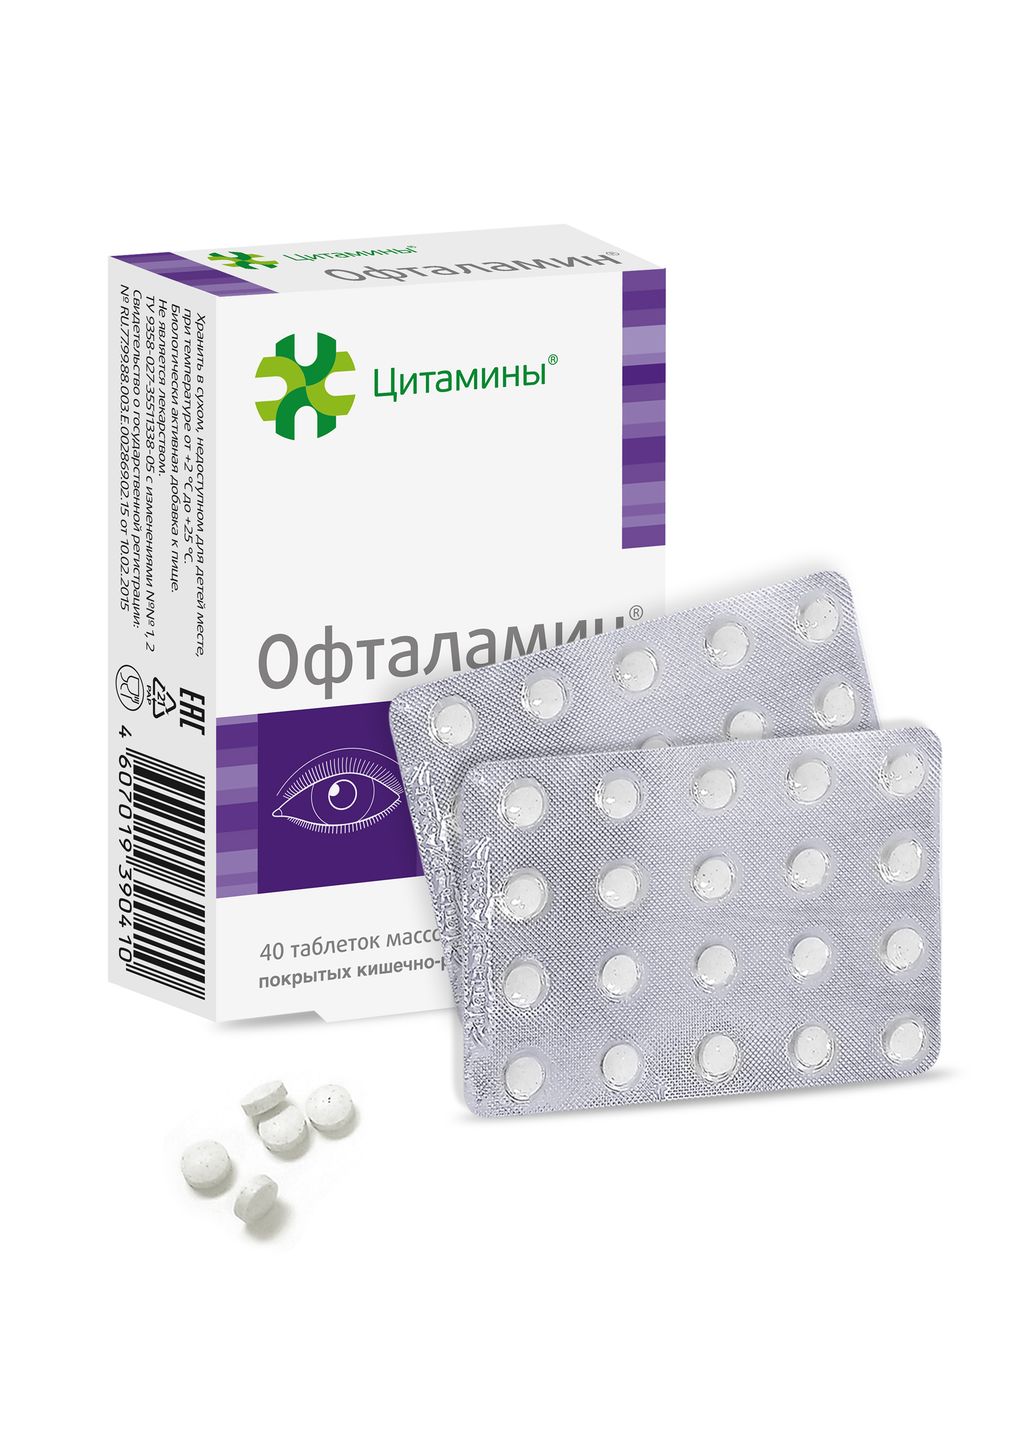 Офталамин, 155 мг, таблетки, покрытые кишечнорастворимой оболочкой, 40 шт.